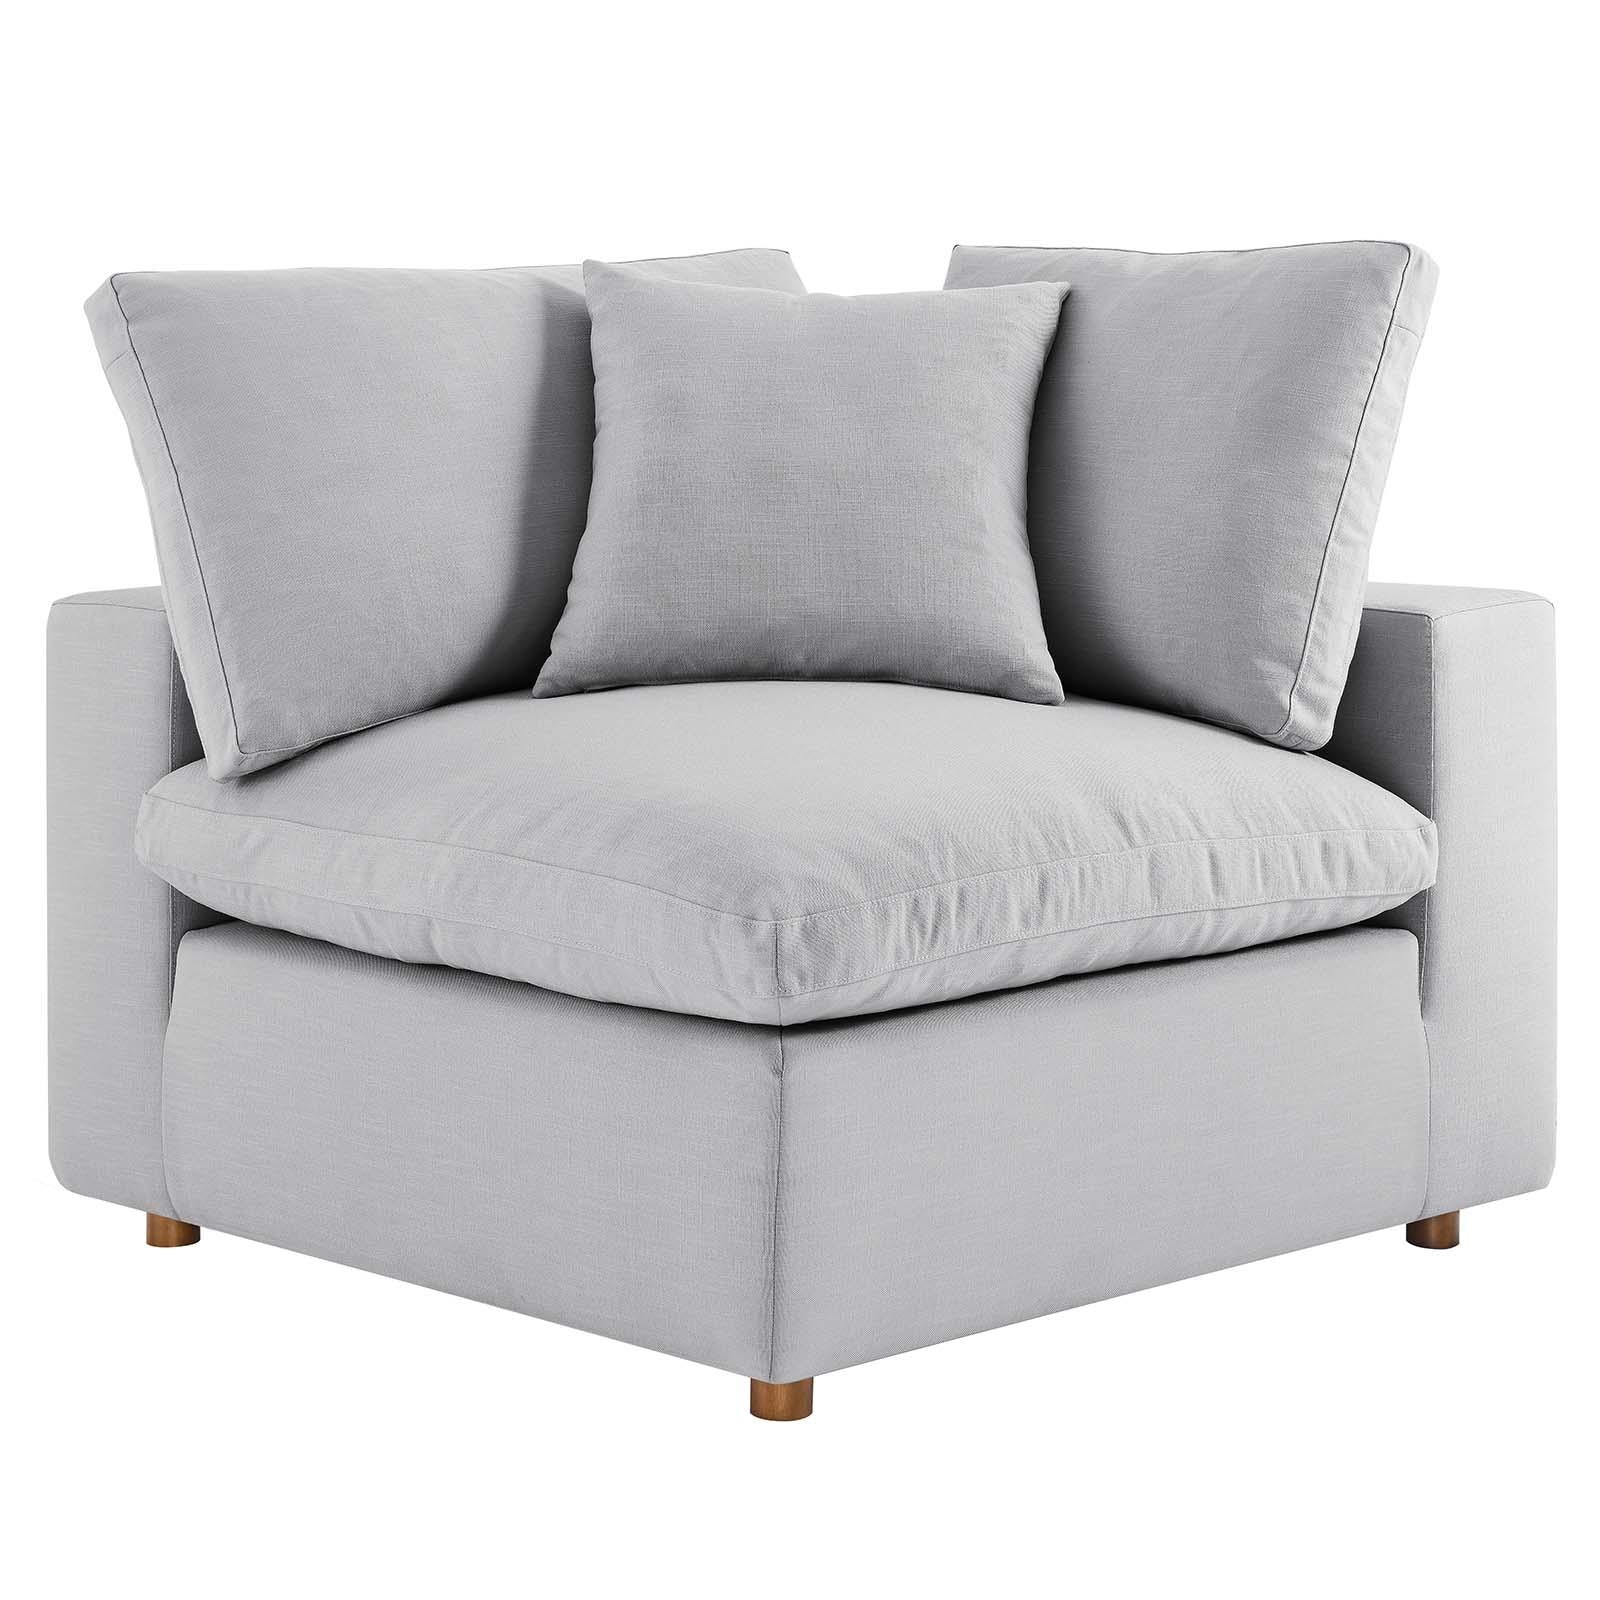 Modway Furniture Modern Commix Down Filled Overstuffed 4 Piece Sectional Sofa Set - EEI-3356